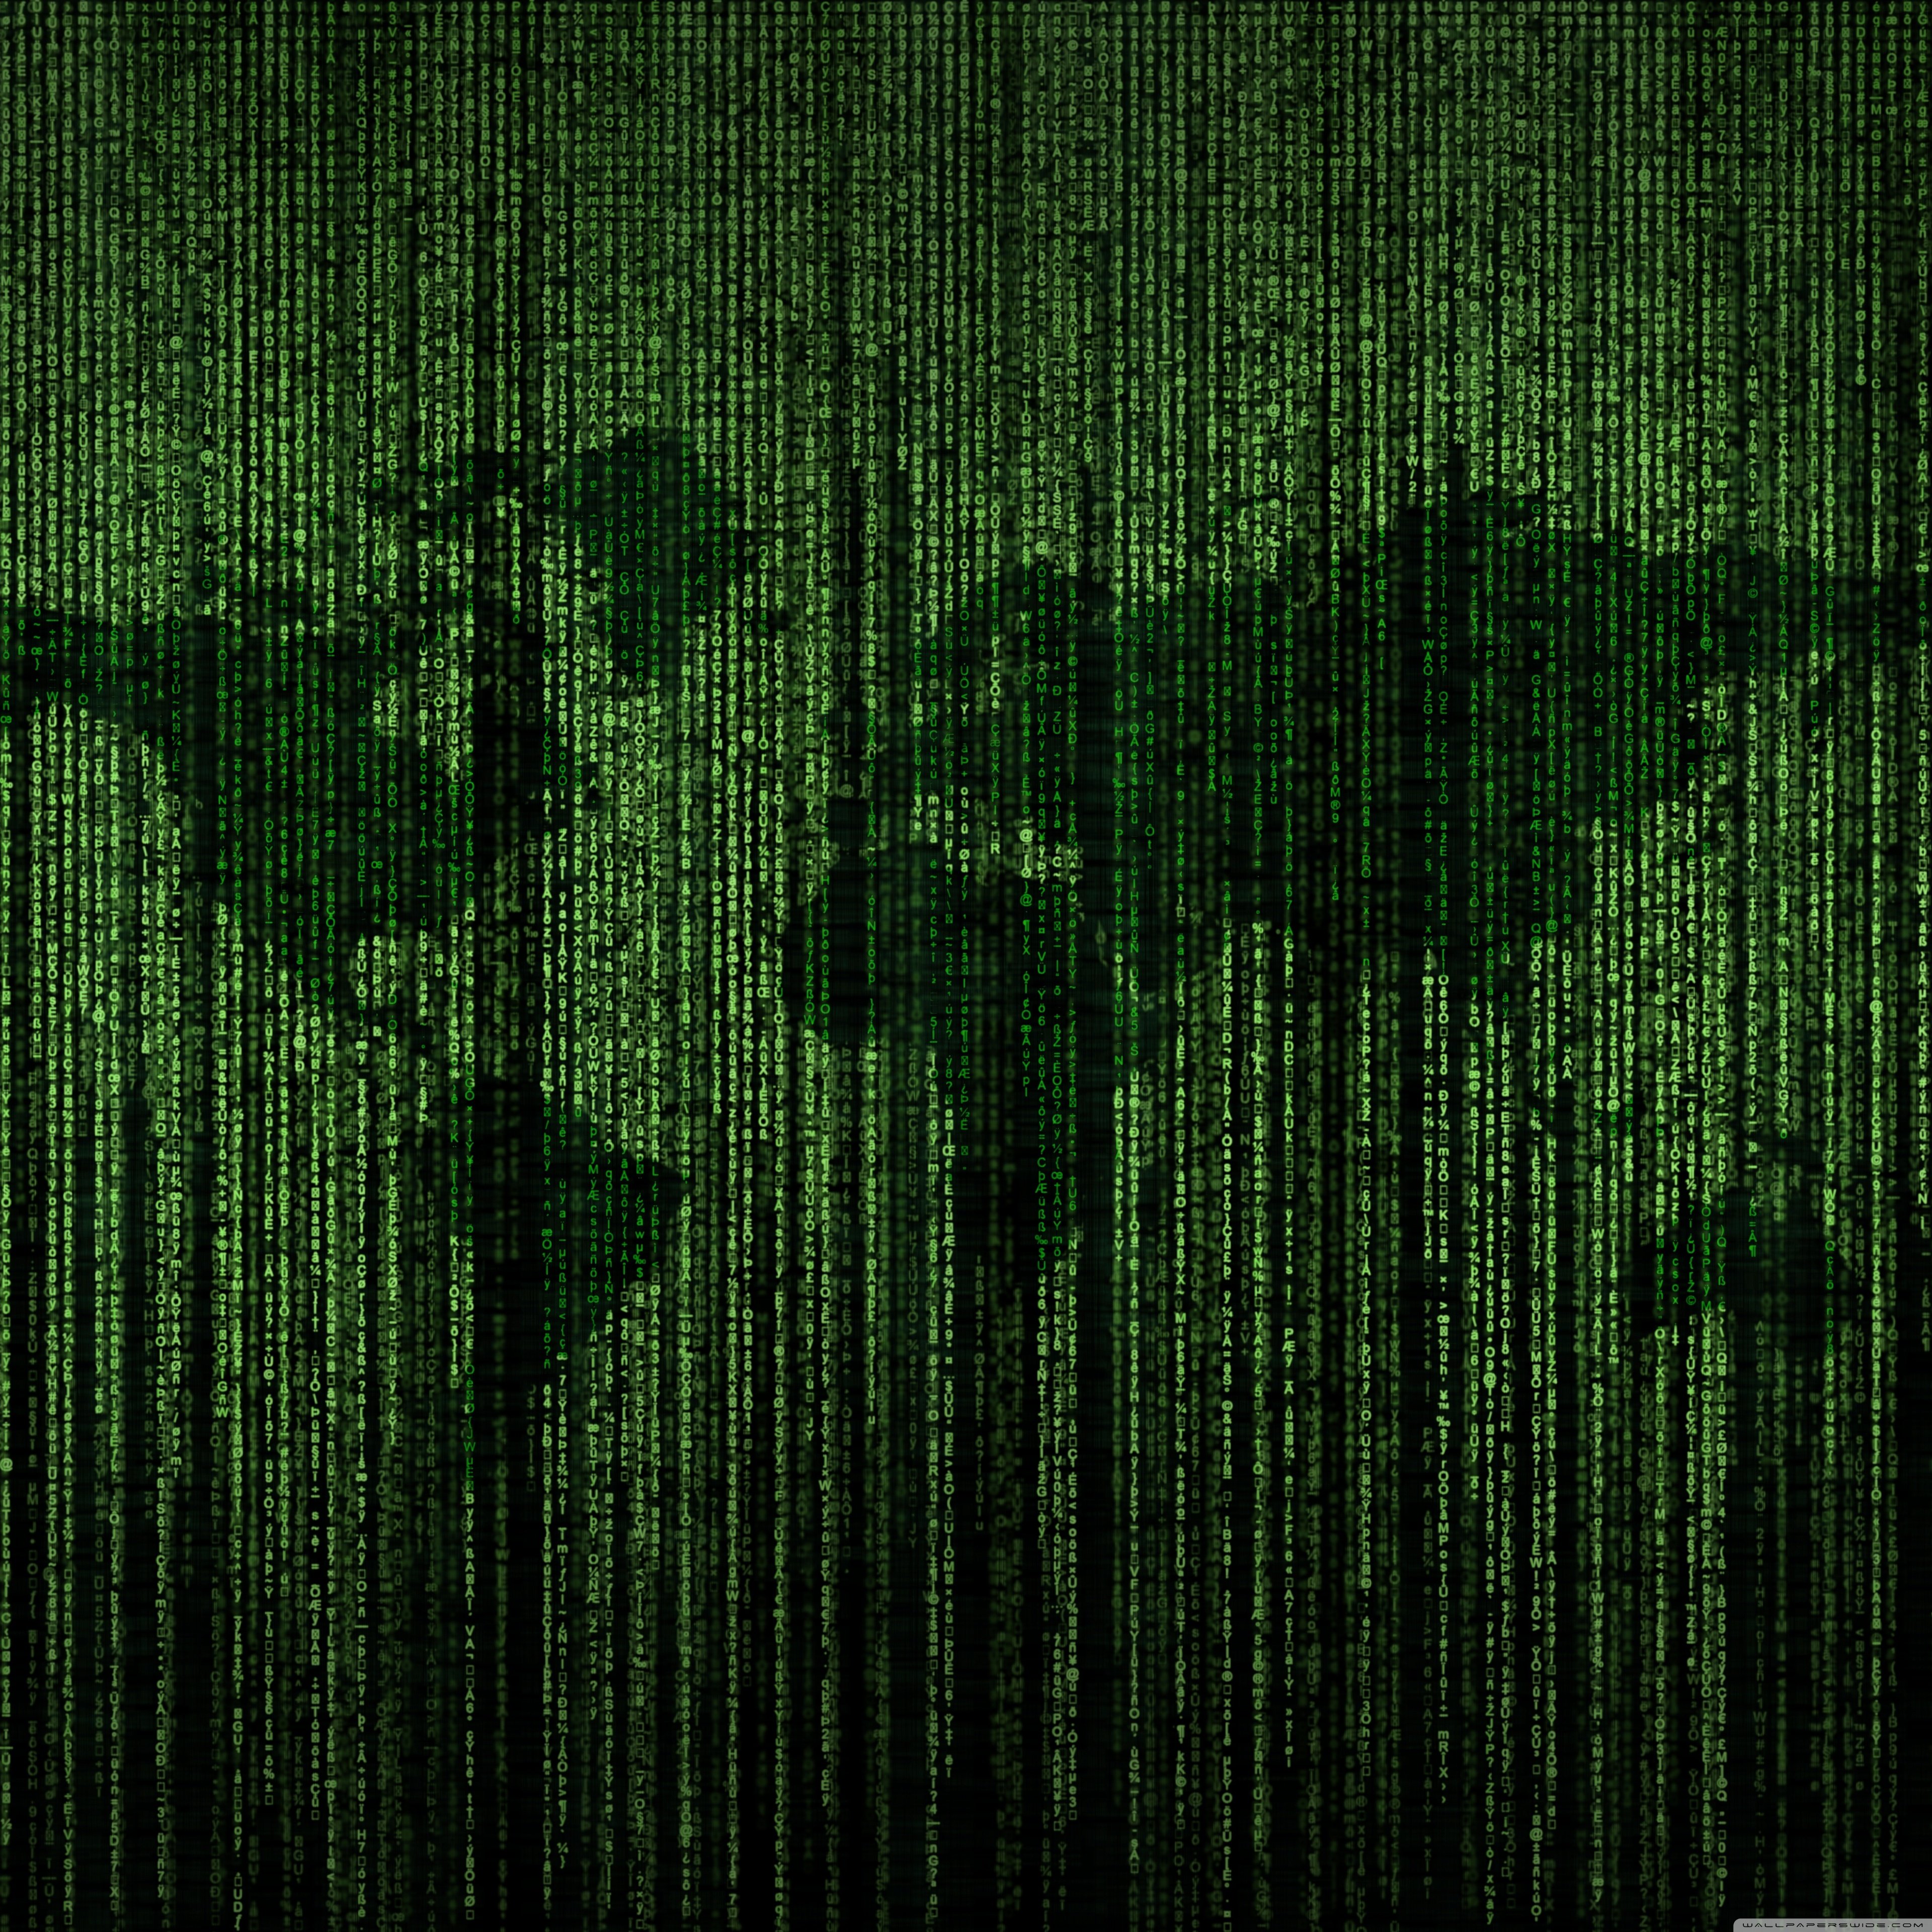 Green Matrix Code World Map 4K HD Desktop Wallpaper for 4K